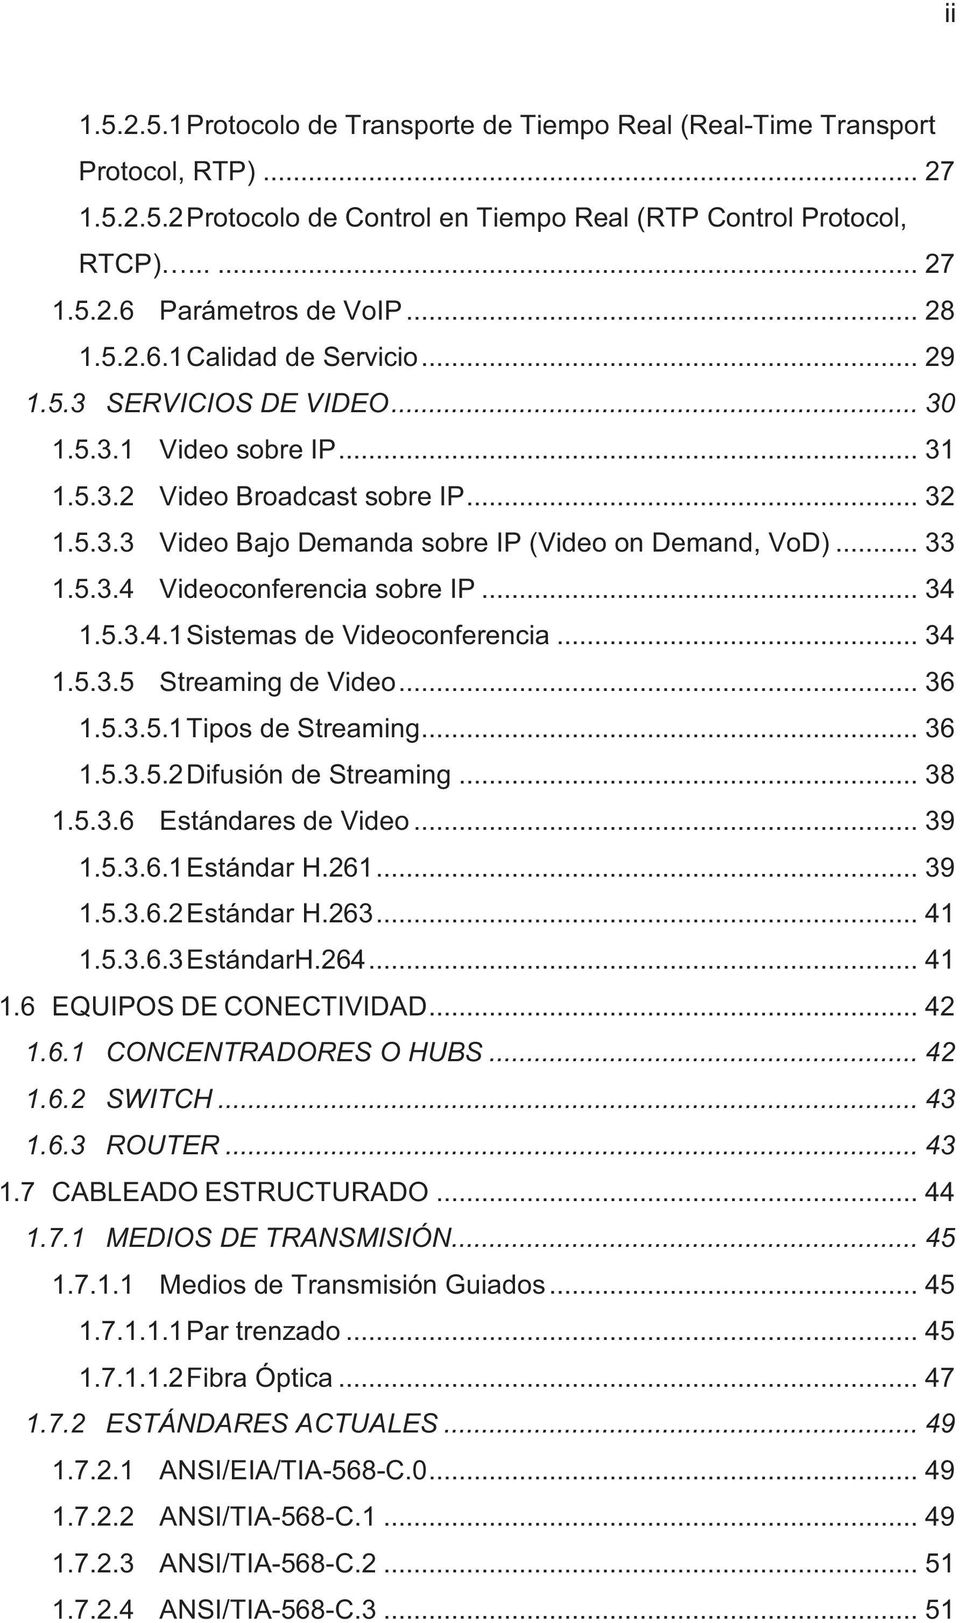 .. 33 1.5.3.4 Videoconferencia sobre IP... 34 1.5.3.4.1 Sistemas de Videoconferencia... 34 1.5.3.5 Streaming de Video... 36 1.5.3.5.1 Tipos de Streaming... 36 1.5.3.5.2 Difusión de Streaming... 38 1.